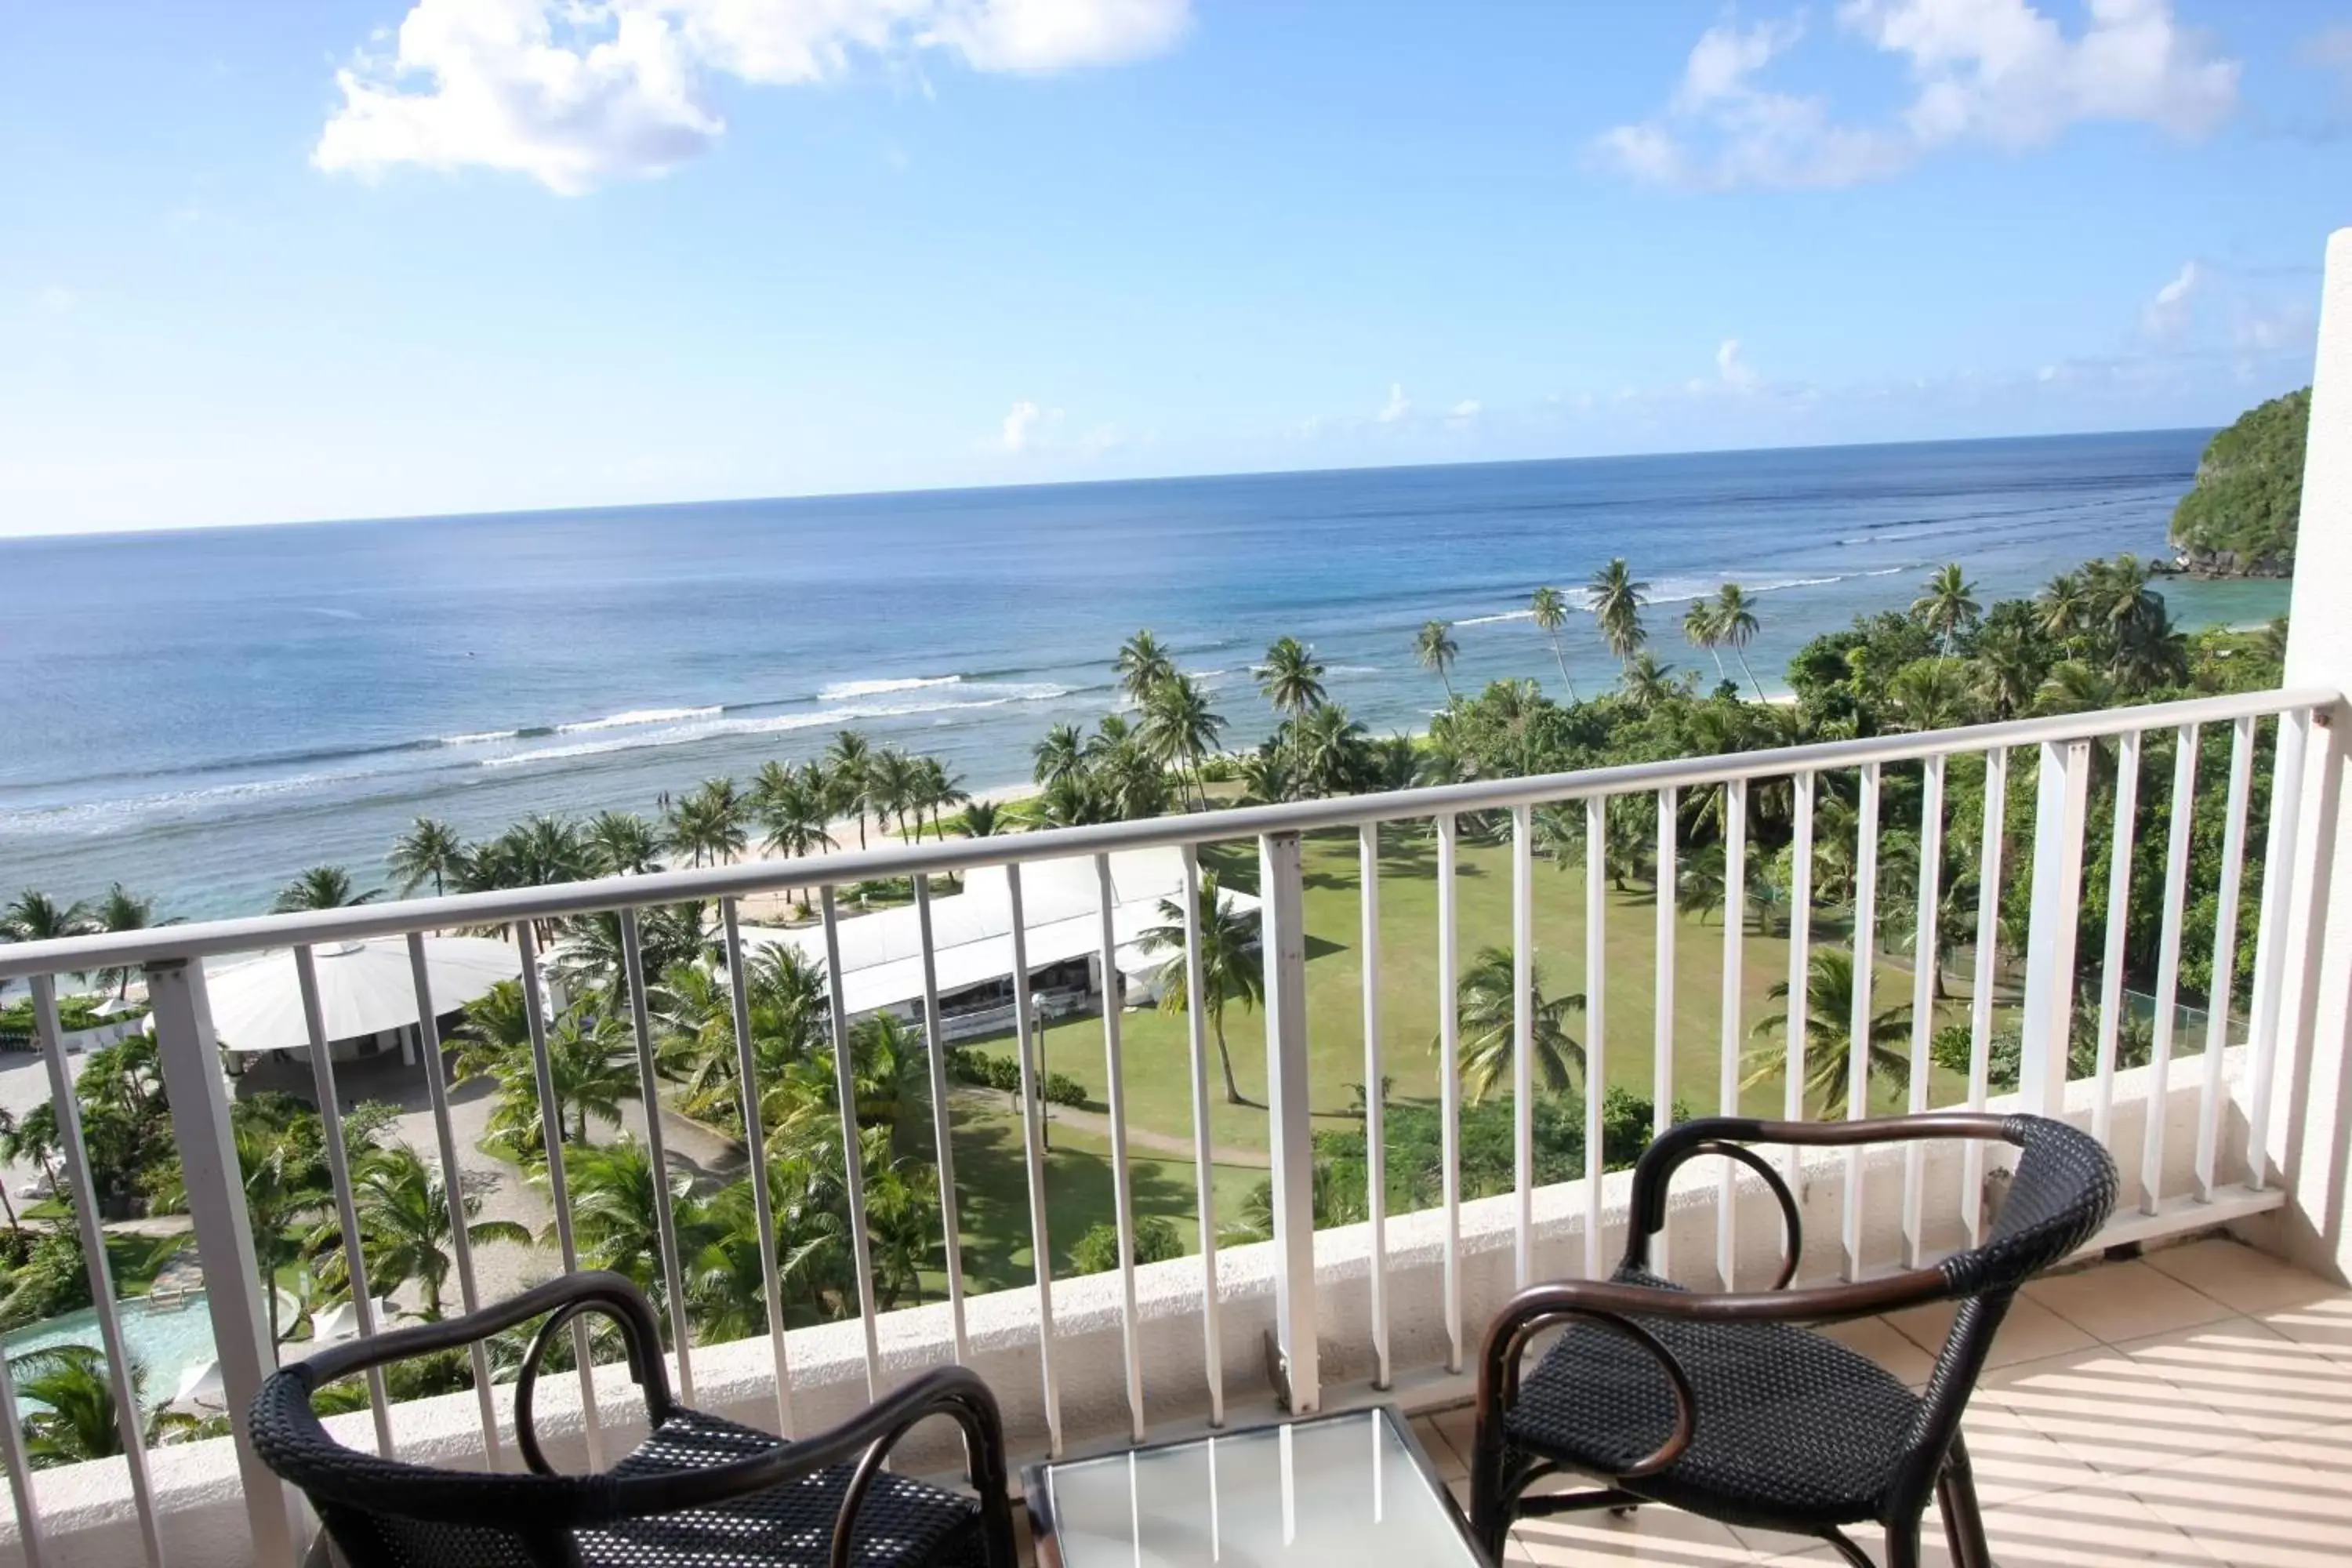 Sea view in Hotel Nikko Guam